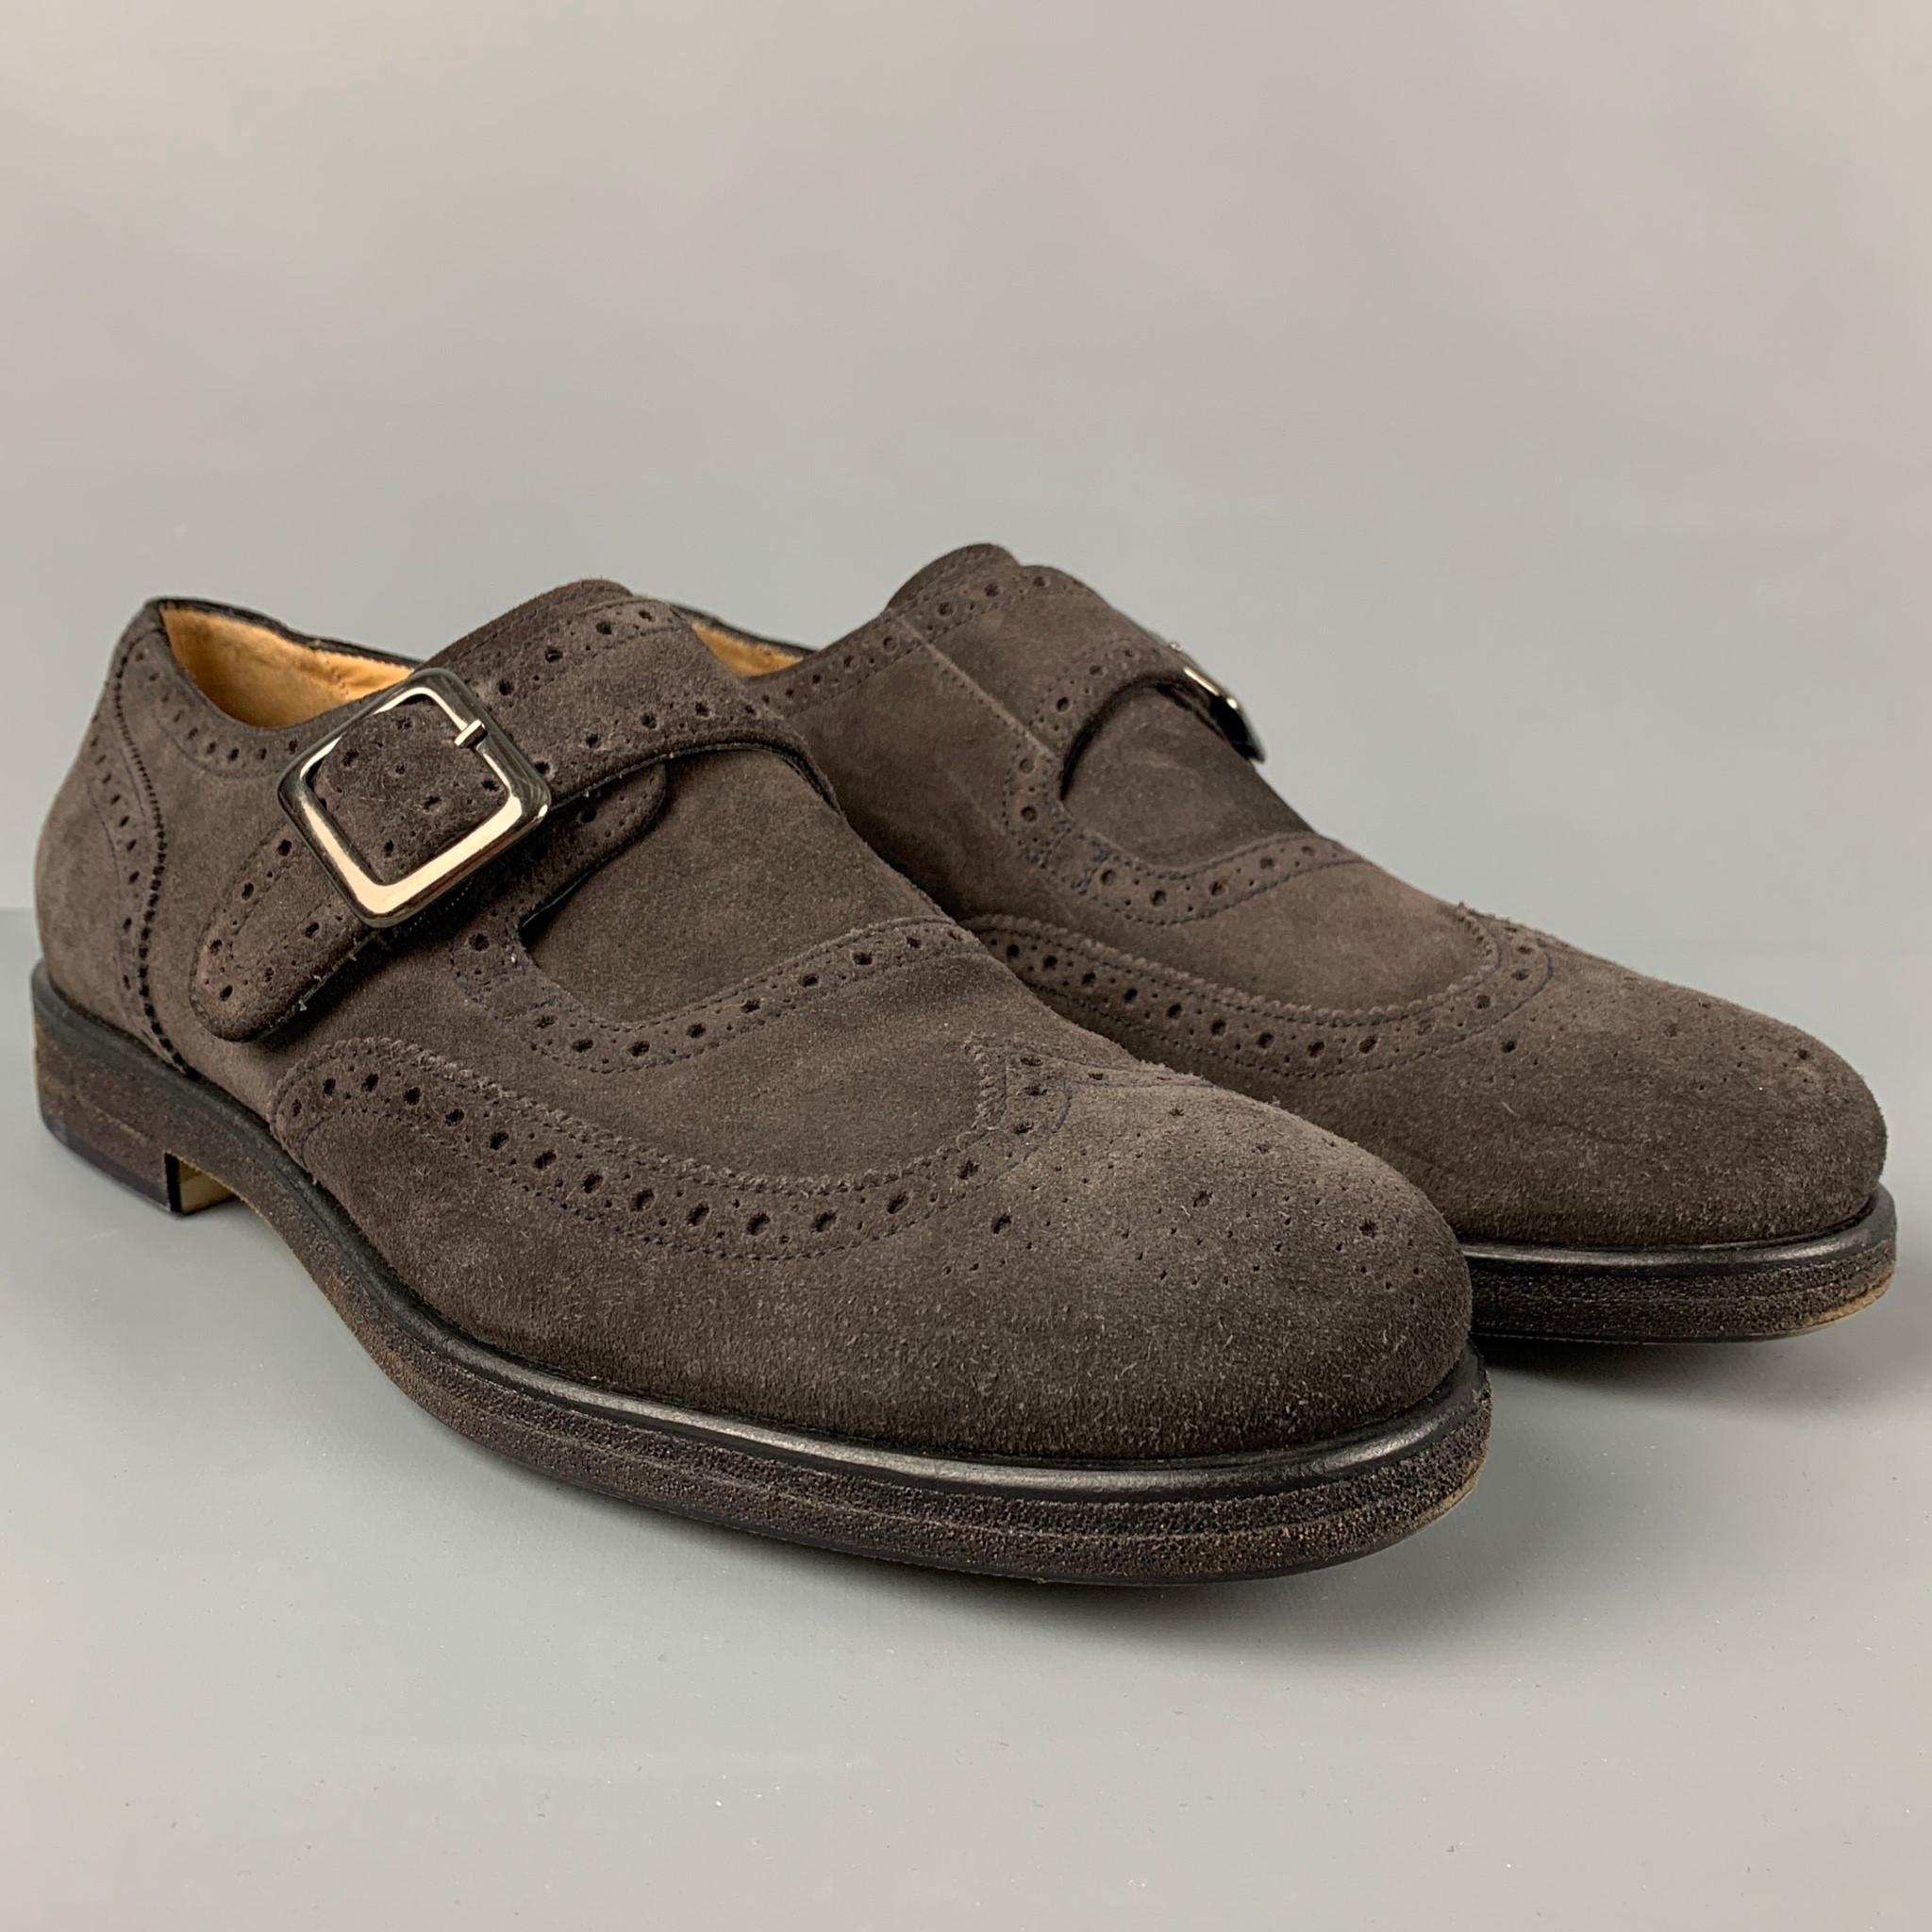 Giorgio Armani GIORGIO ARMANI Size 11 Brown Perforated Leather Monk Strap Loafers 